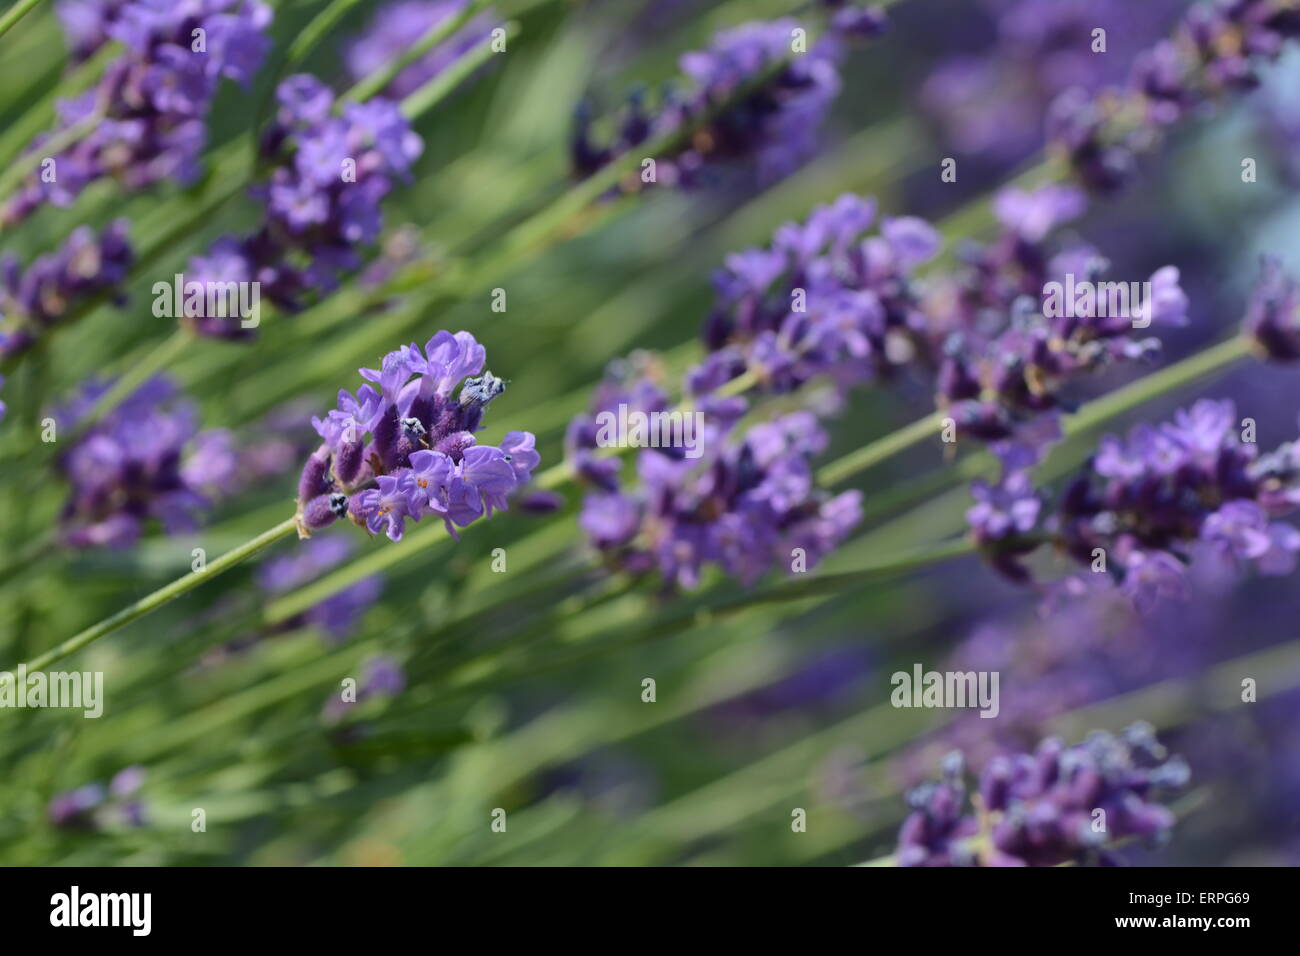 lavendar flowers in a field Stock Photo